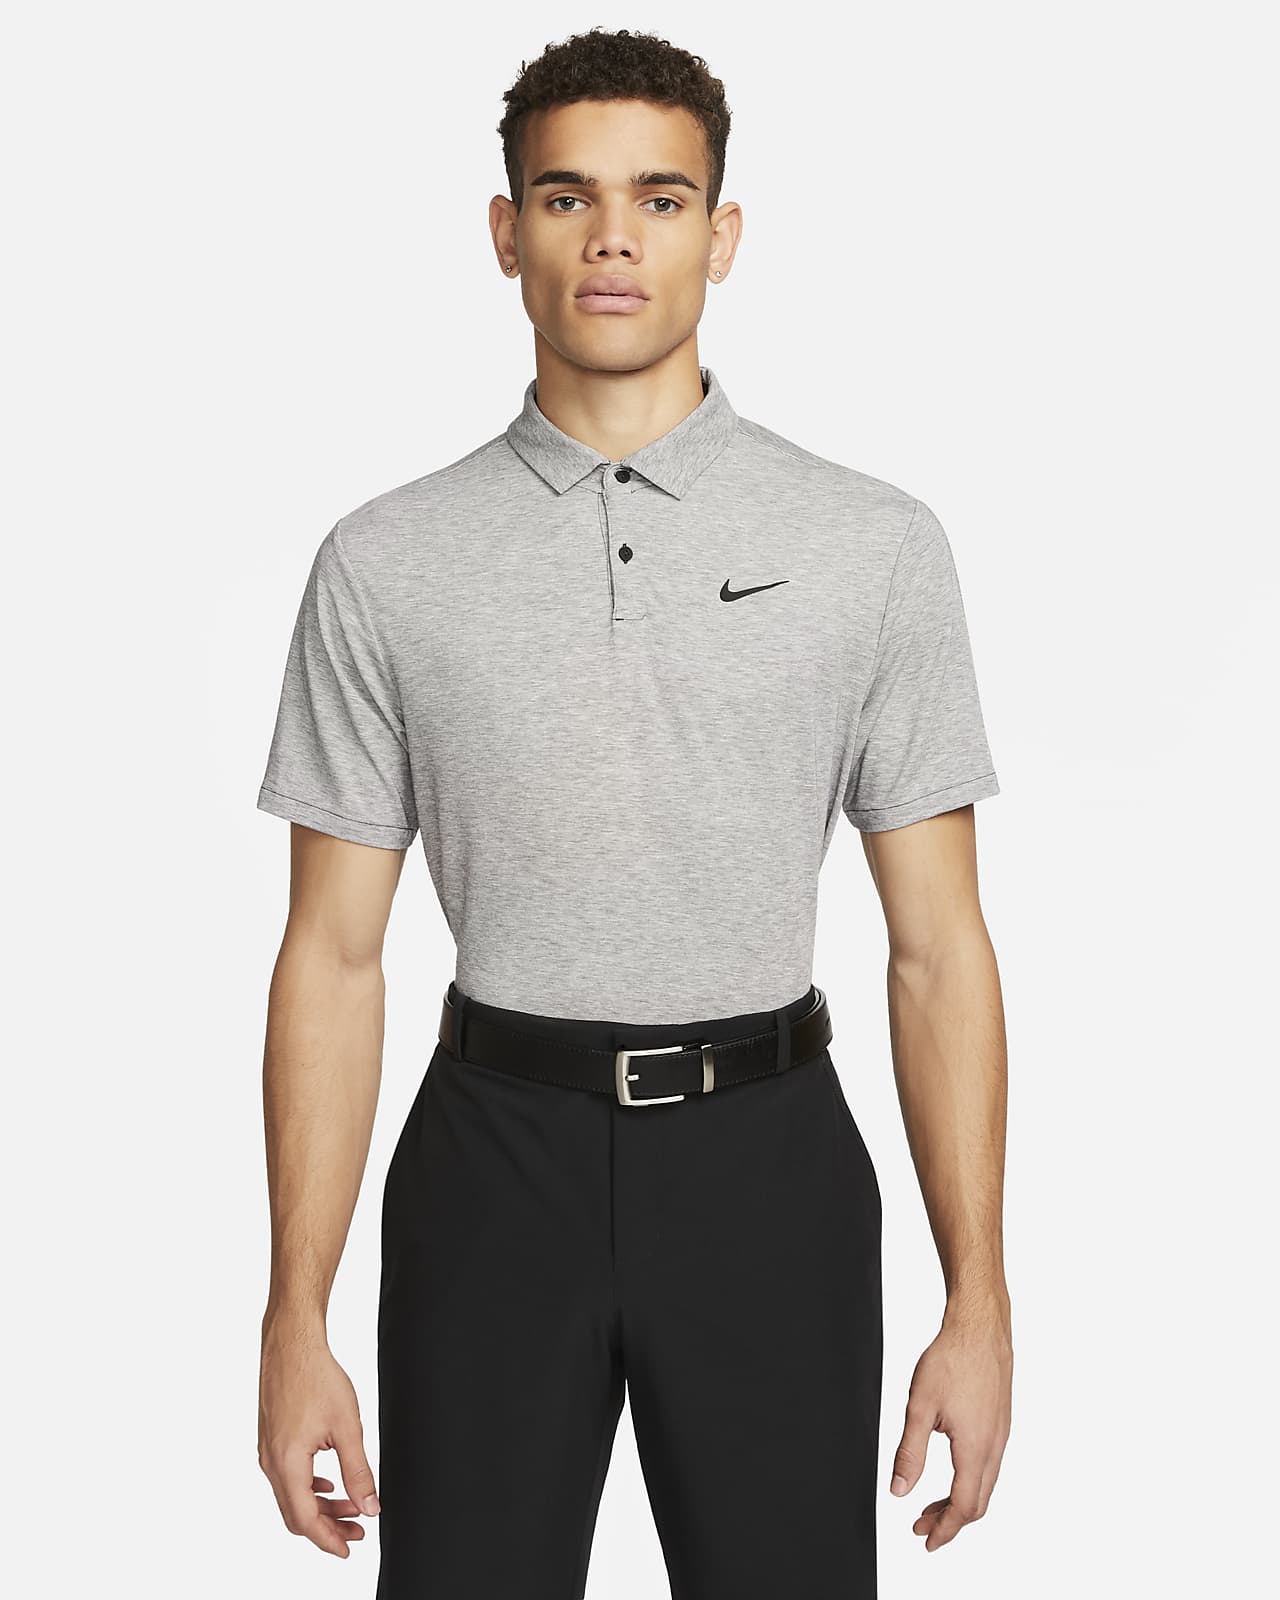 Ανδρική μπλούζα πόλο για γκολφ Nike Dri-FIT Tour